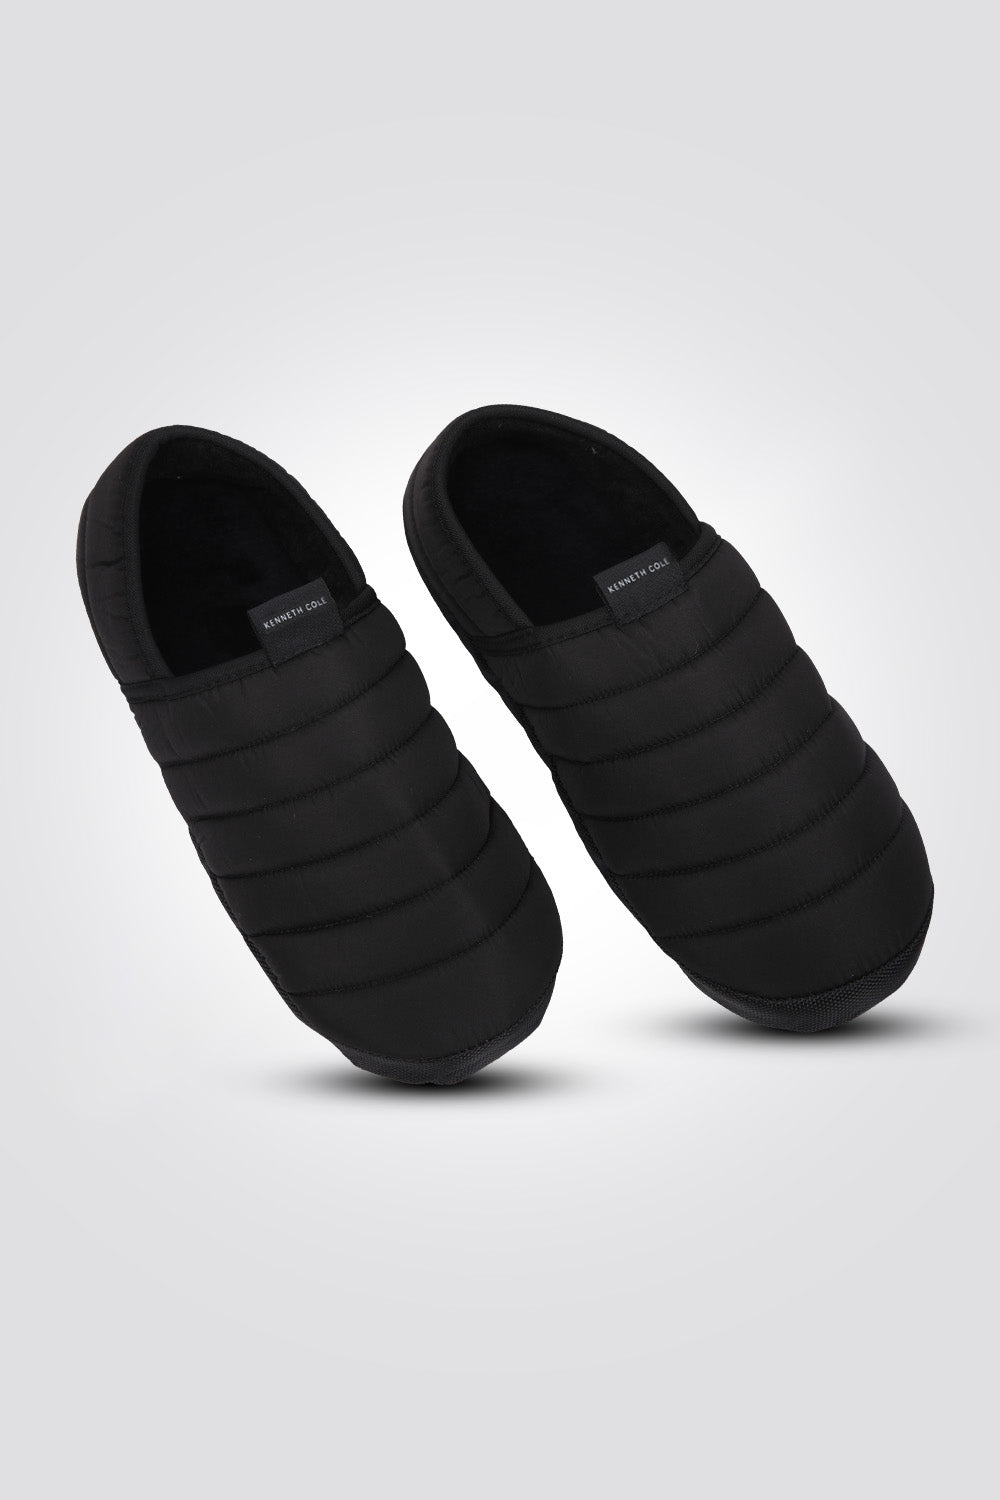 נעלי בית לגברים בצבע שחור